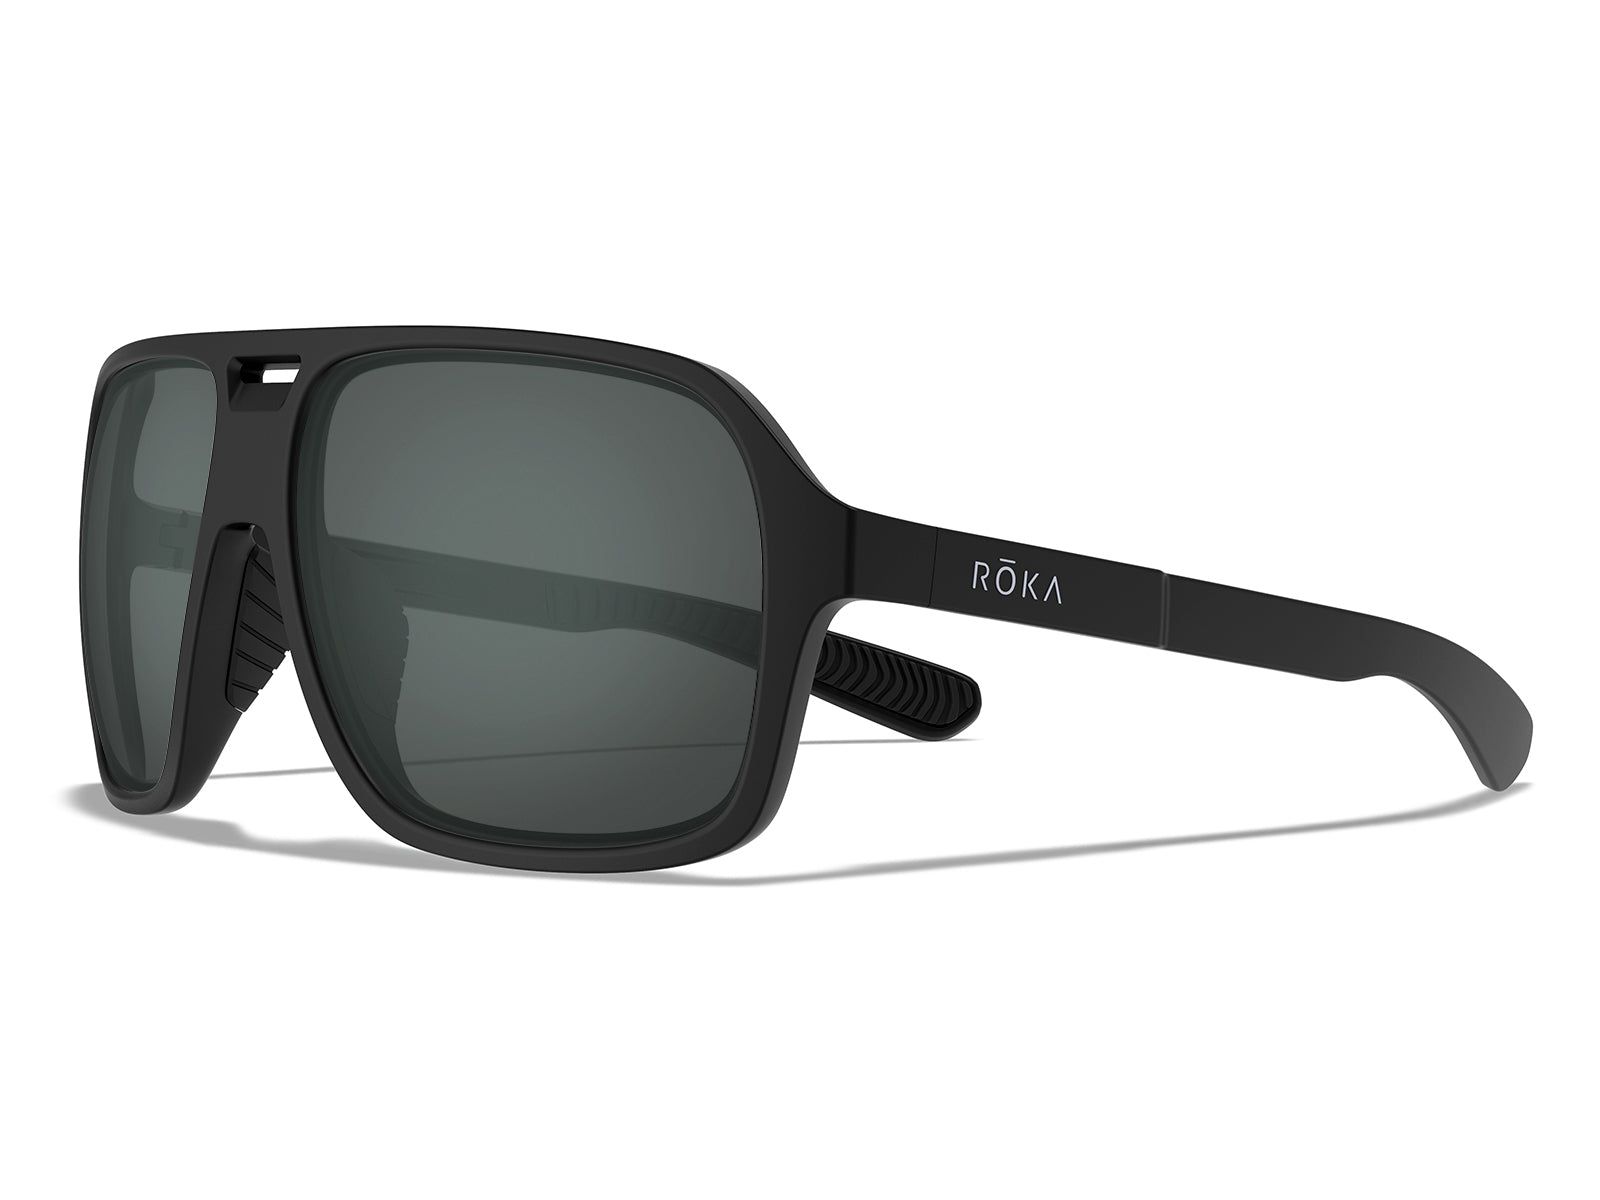 Torino Sunglasses - Retro Race-Inspired Sunglasses